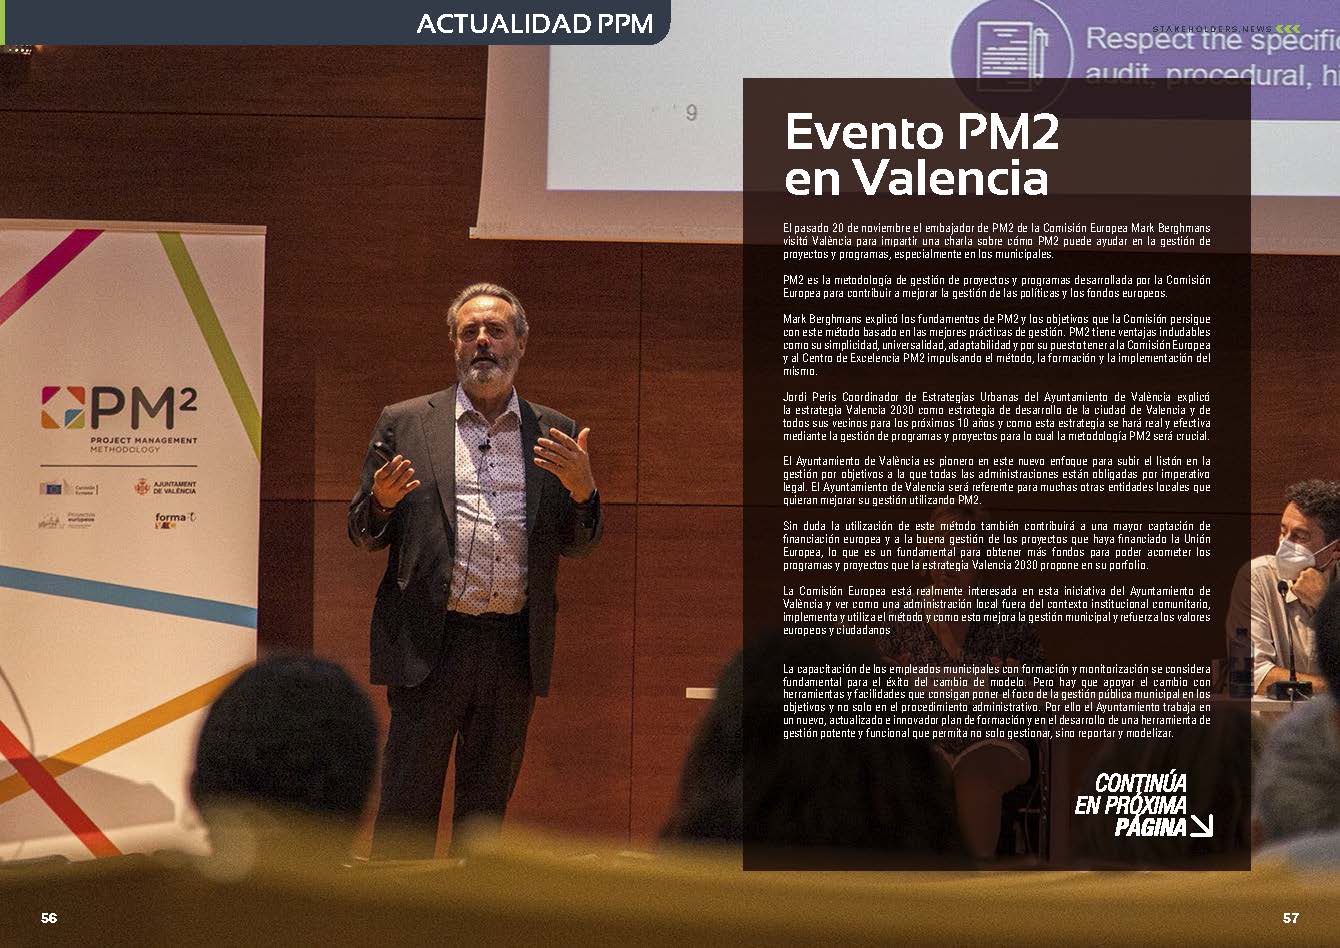 Crónica del Evento PM2 en Valencia en la Revista Mensual Stakeholders.news